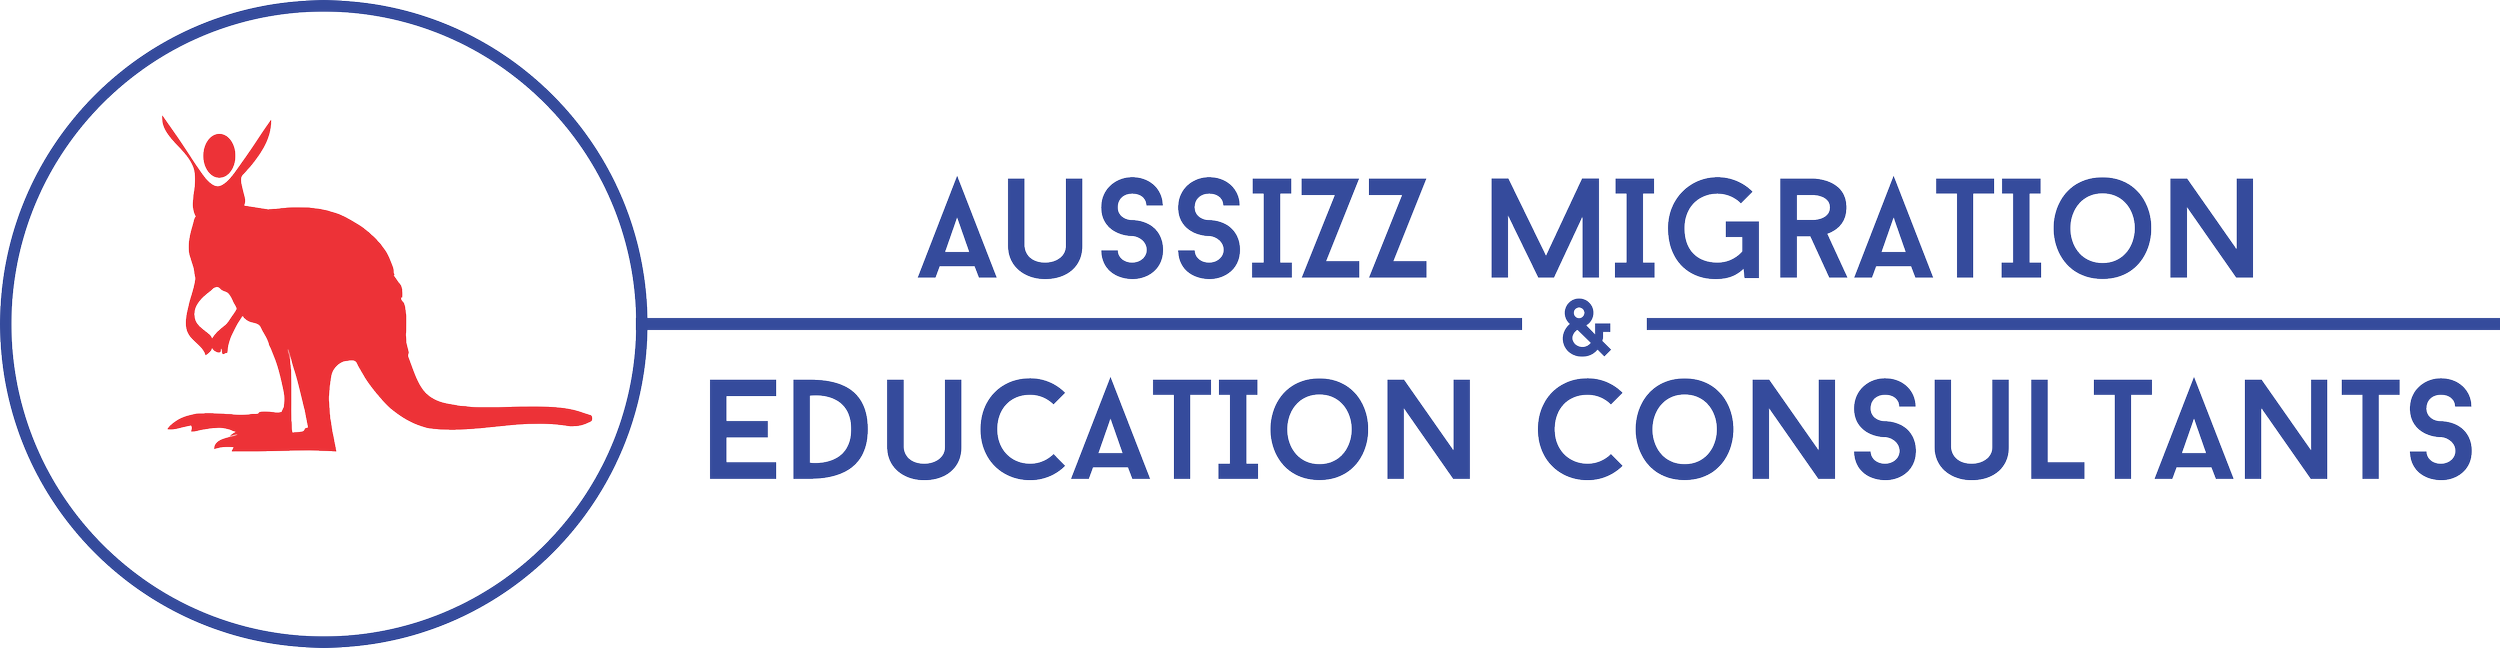 Aussizz Migration & Education Consultants Logo 03 (1).png